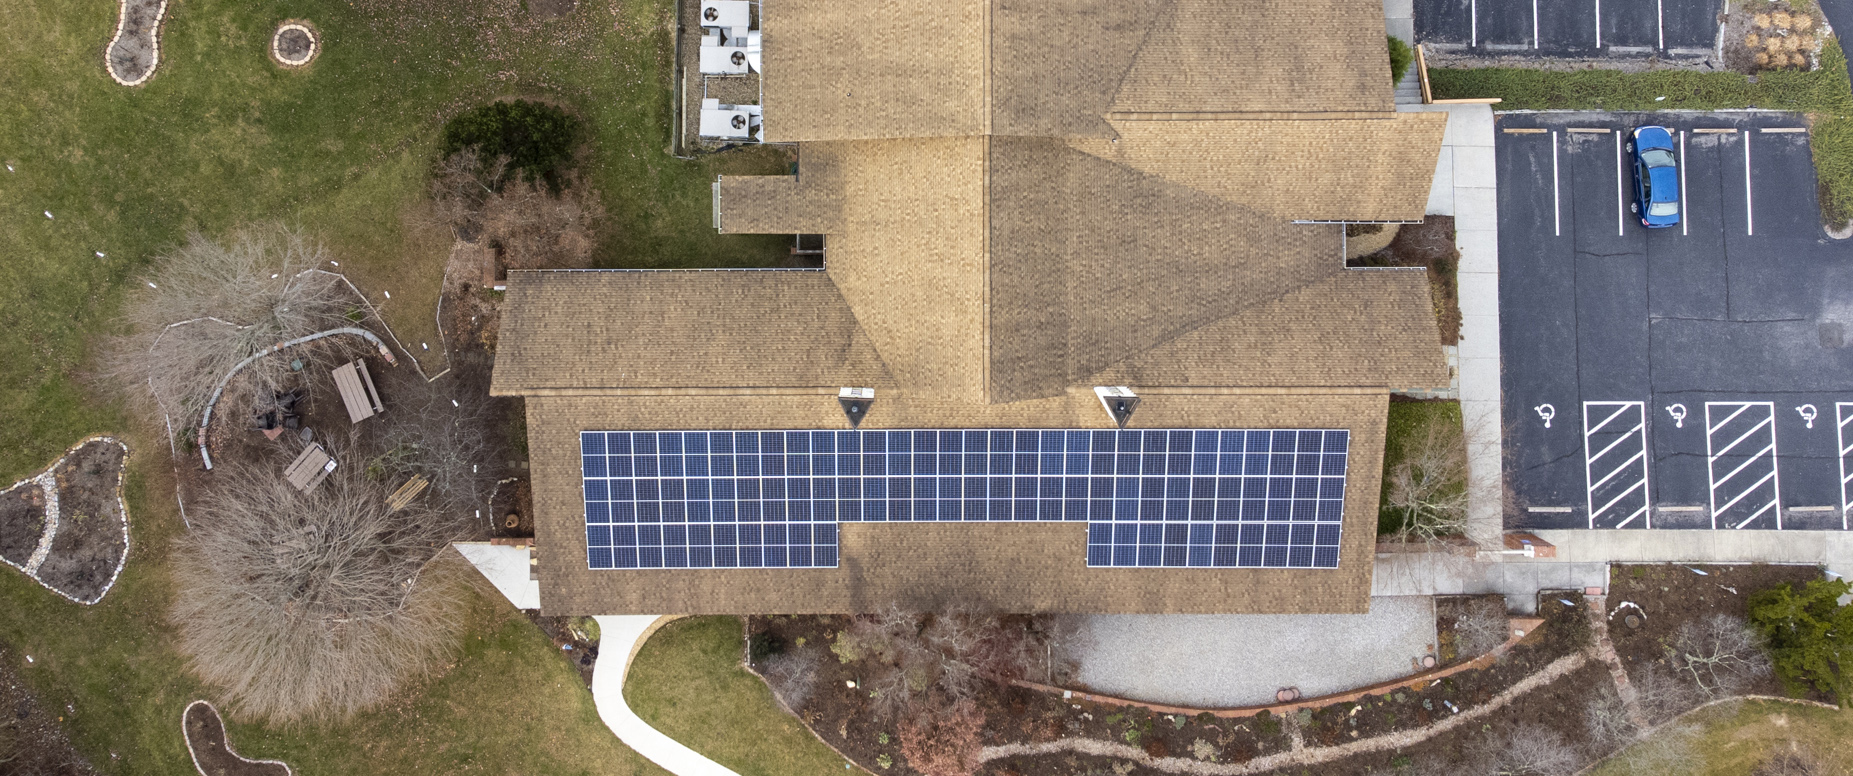 solar installation in blacksburg, Virginia